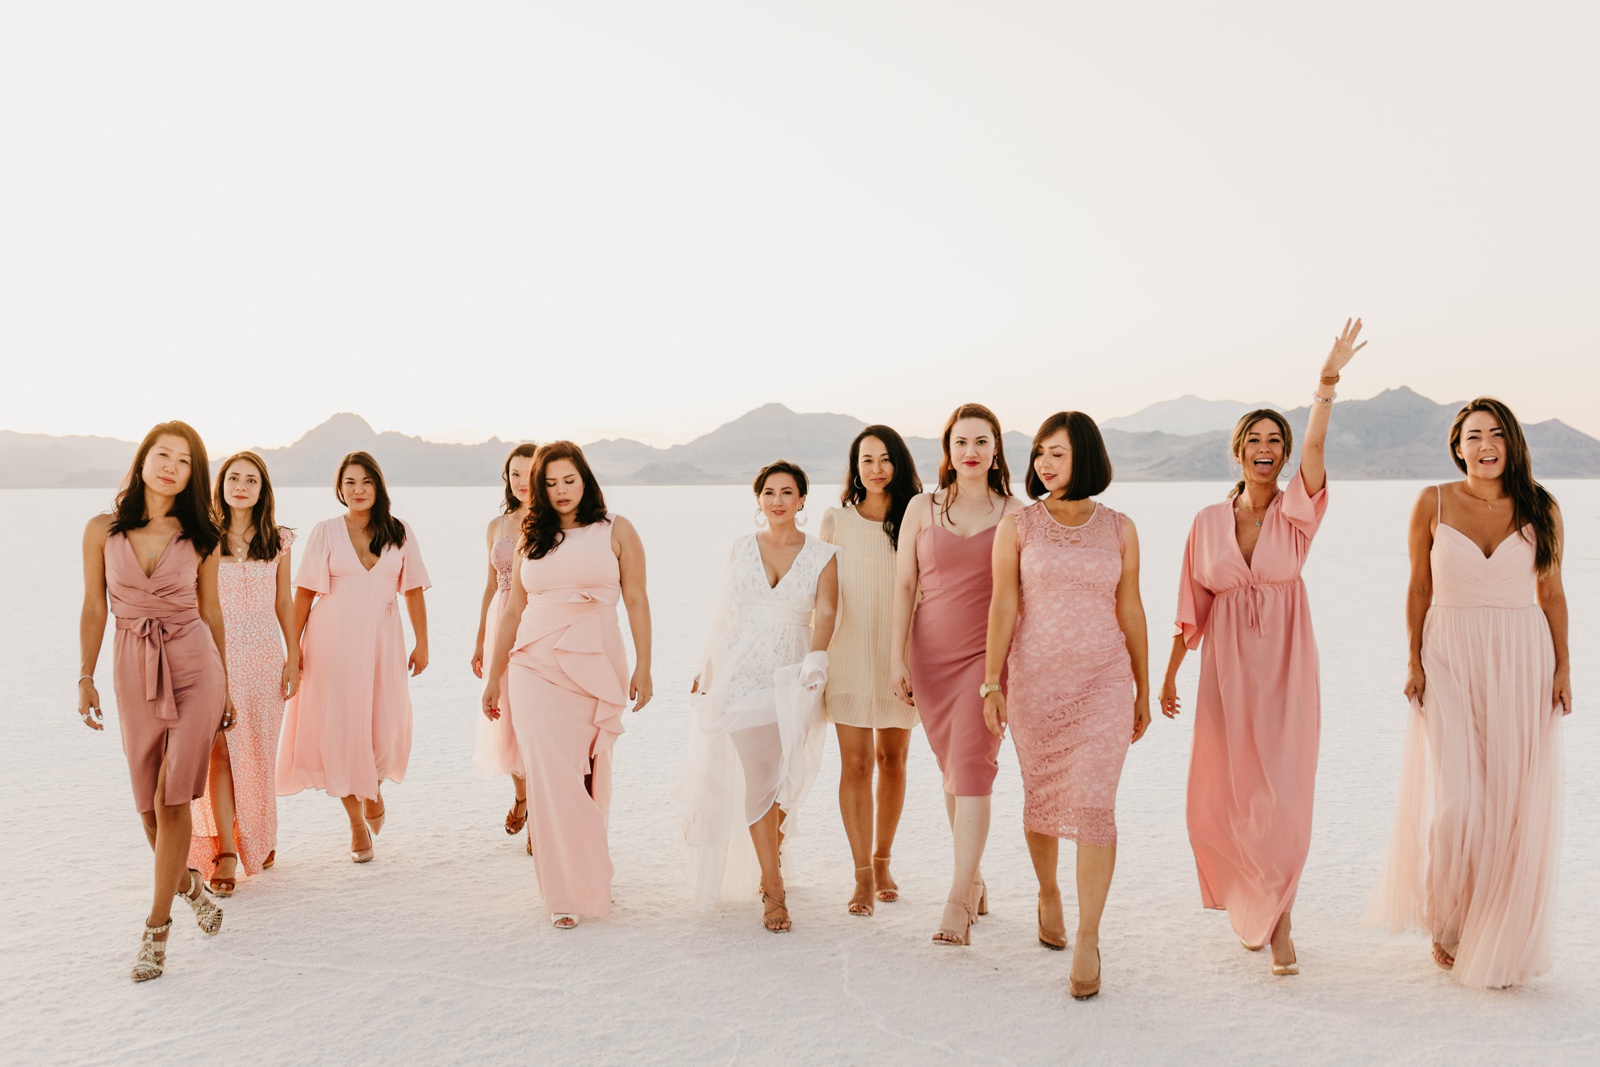 Bridesmaids Photos at Salt Flats Utah